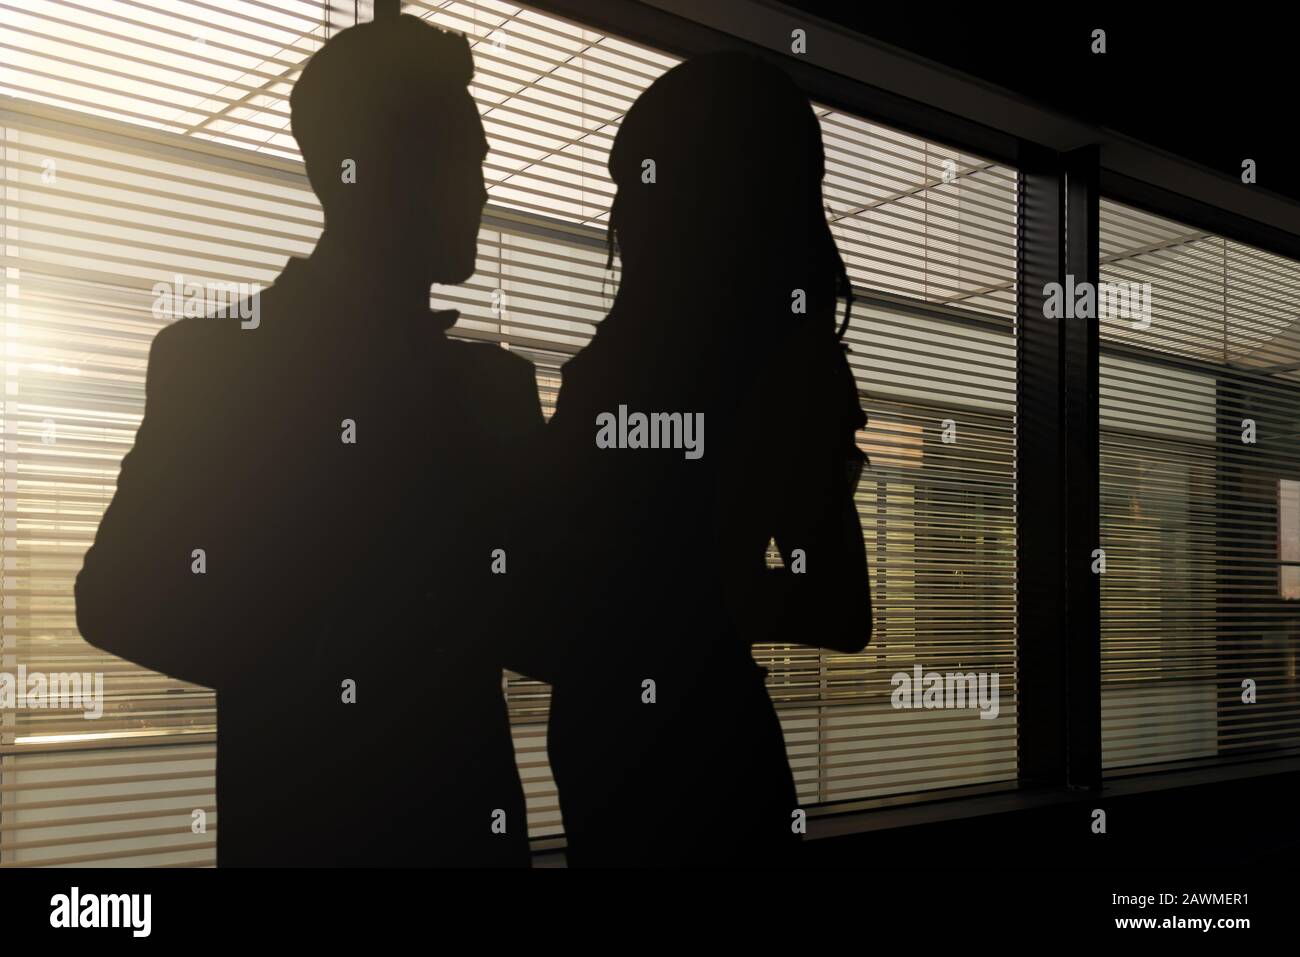 Konzeptbild der Romantik bei der Arbeit - Silhouetten einer Frau und eines Mannes, der sich in einem dunklen Büro umarmt Stockfoto